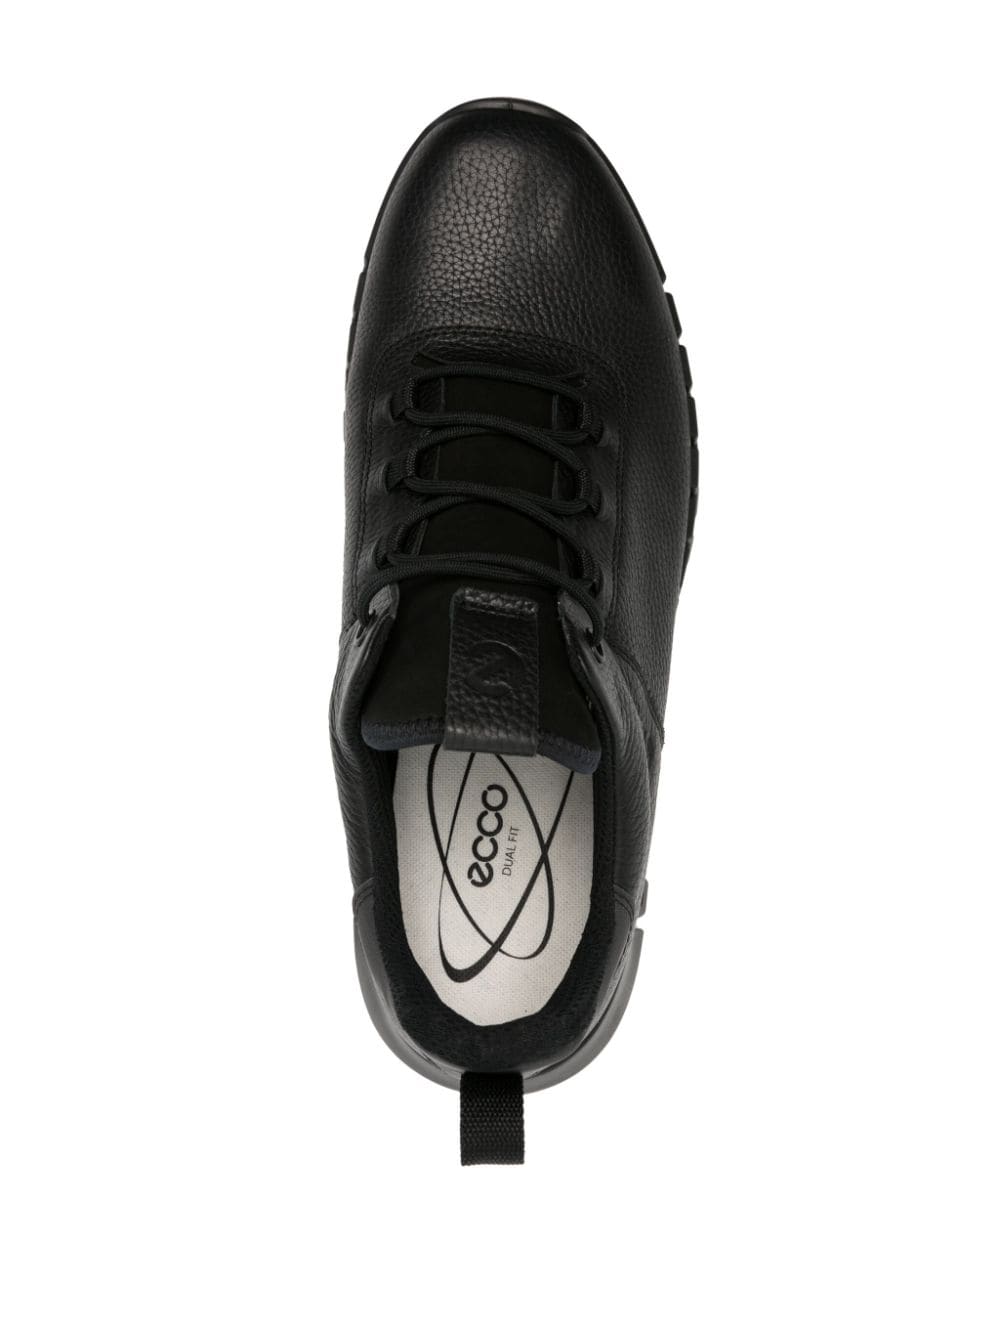 Shop Ecco Gruuv Waterproof Leather Sneakers In Black